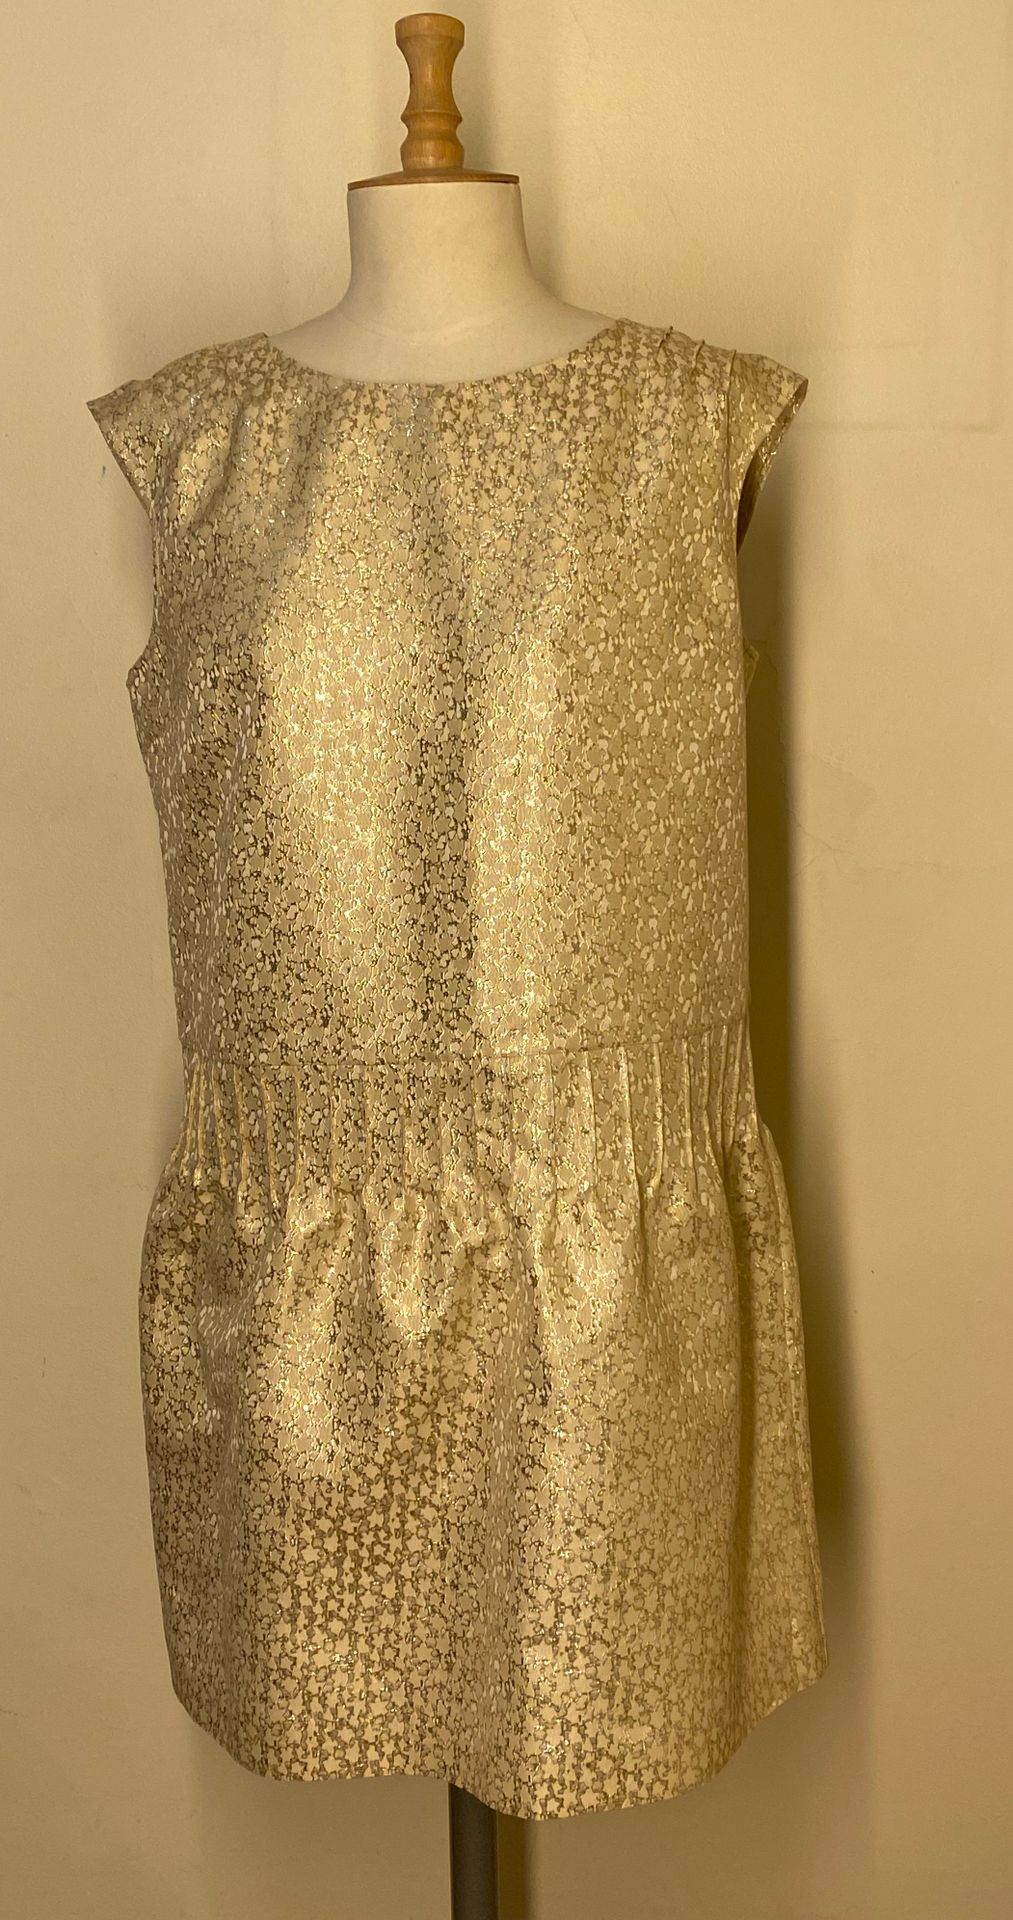 Null A.P.C. Rue Madame Paris

Kleid aus Stoff mit Golddekor. Größe L

(Guter Zus&hellip;